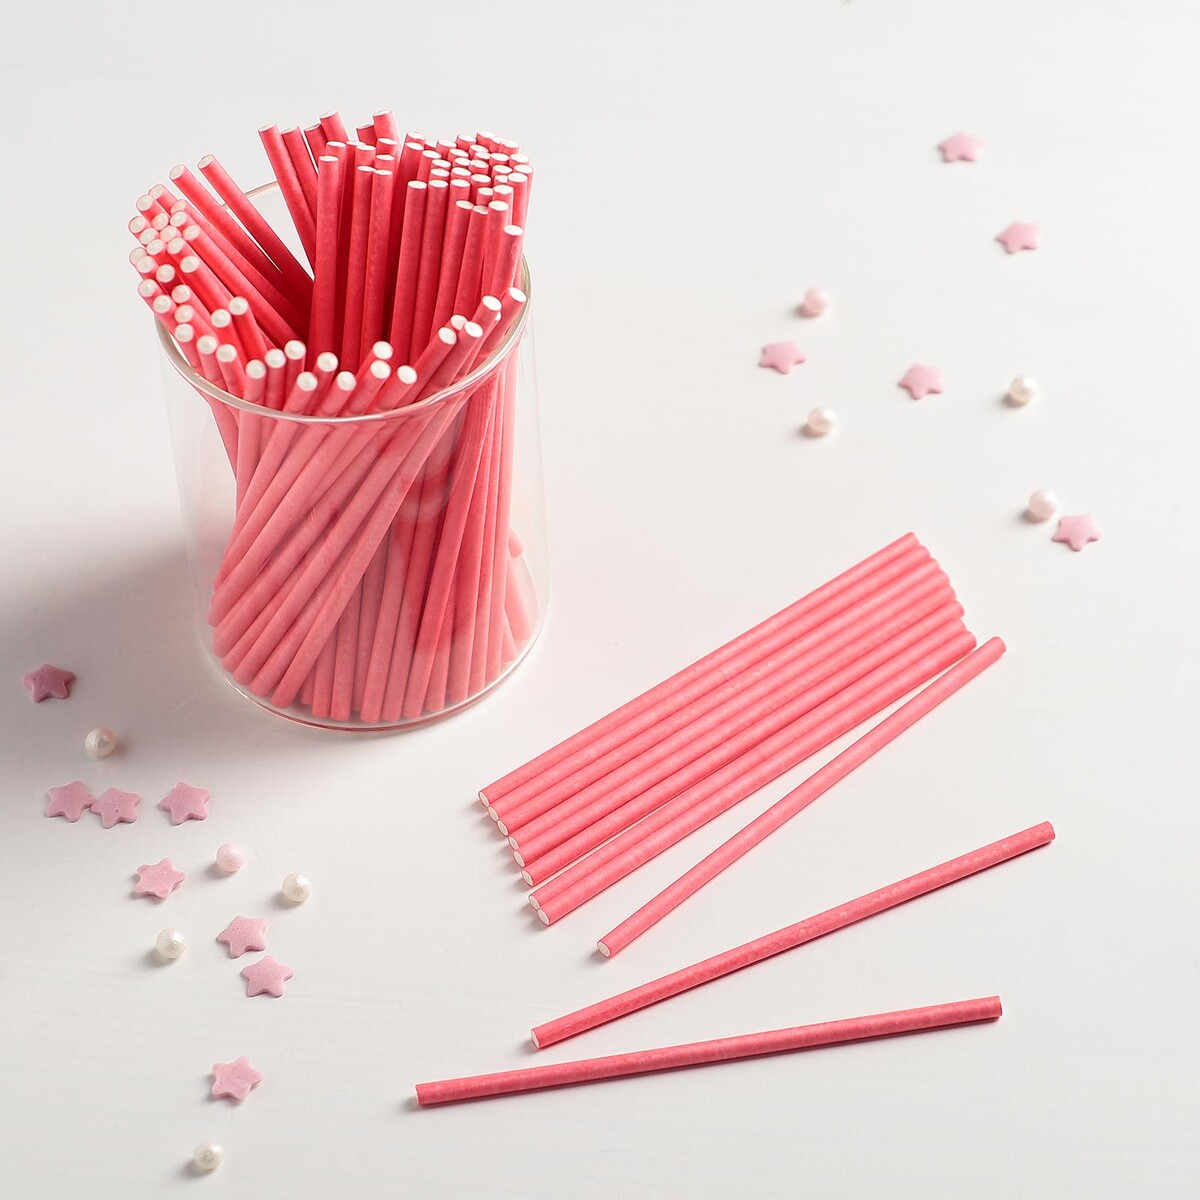 Палочки для кейк-попсов, 10×0,2 см, 100 шт, цвет розовый палочки для кейк попсов 10×0 2 см 100 шт розовый